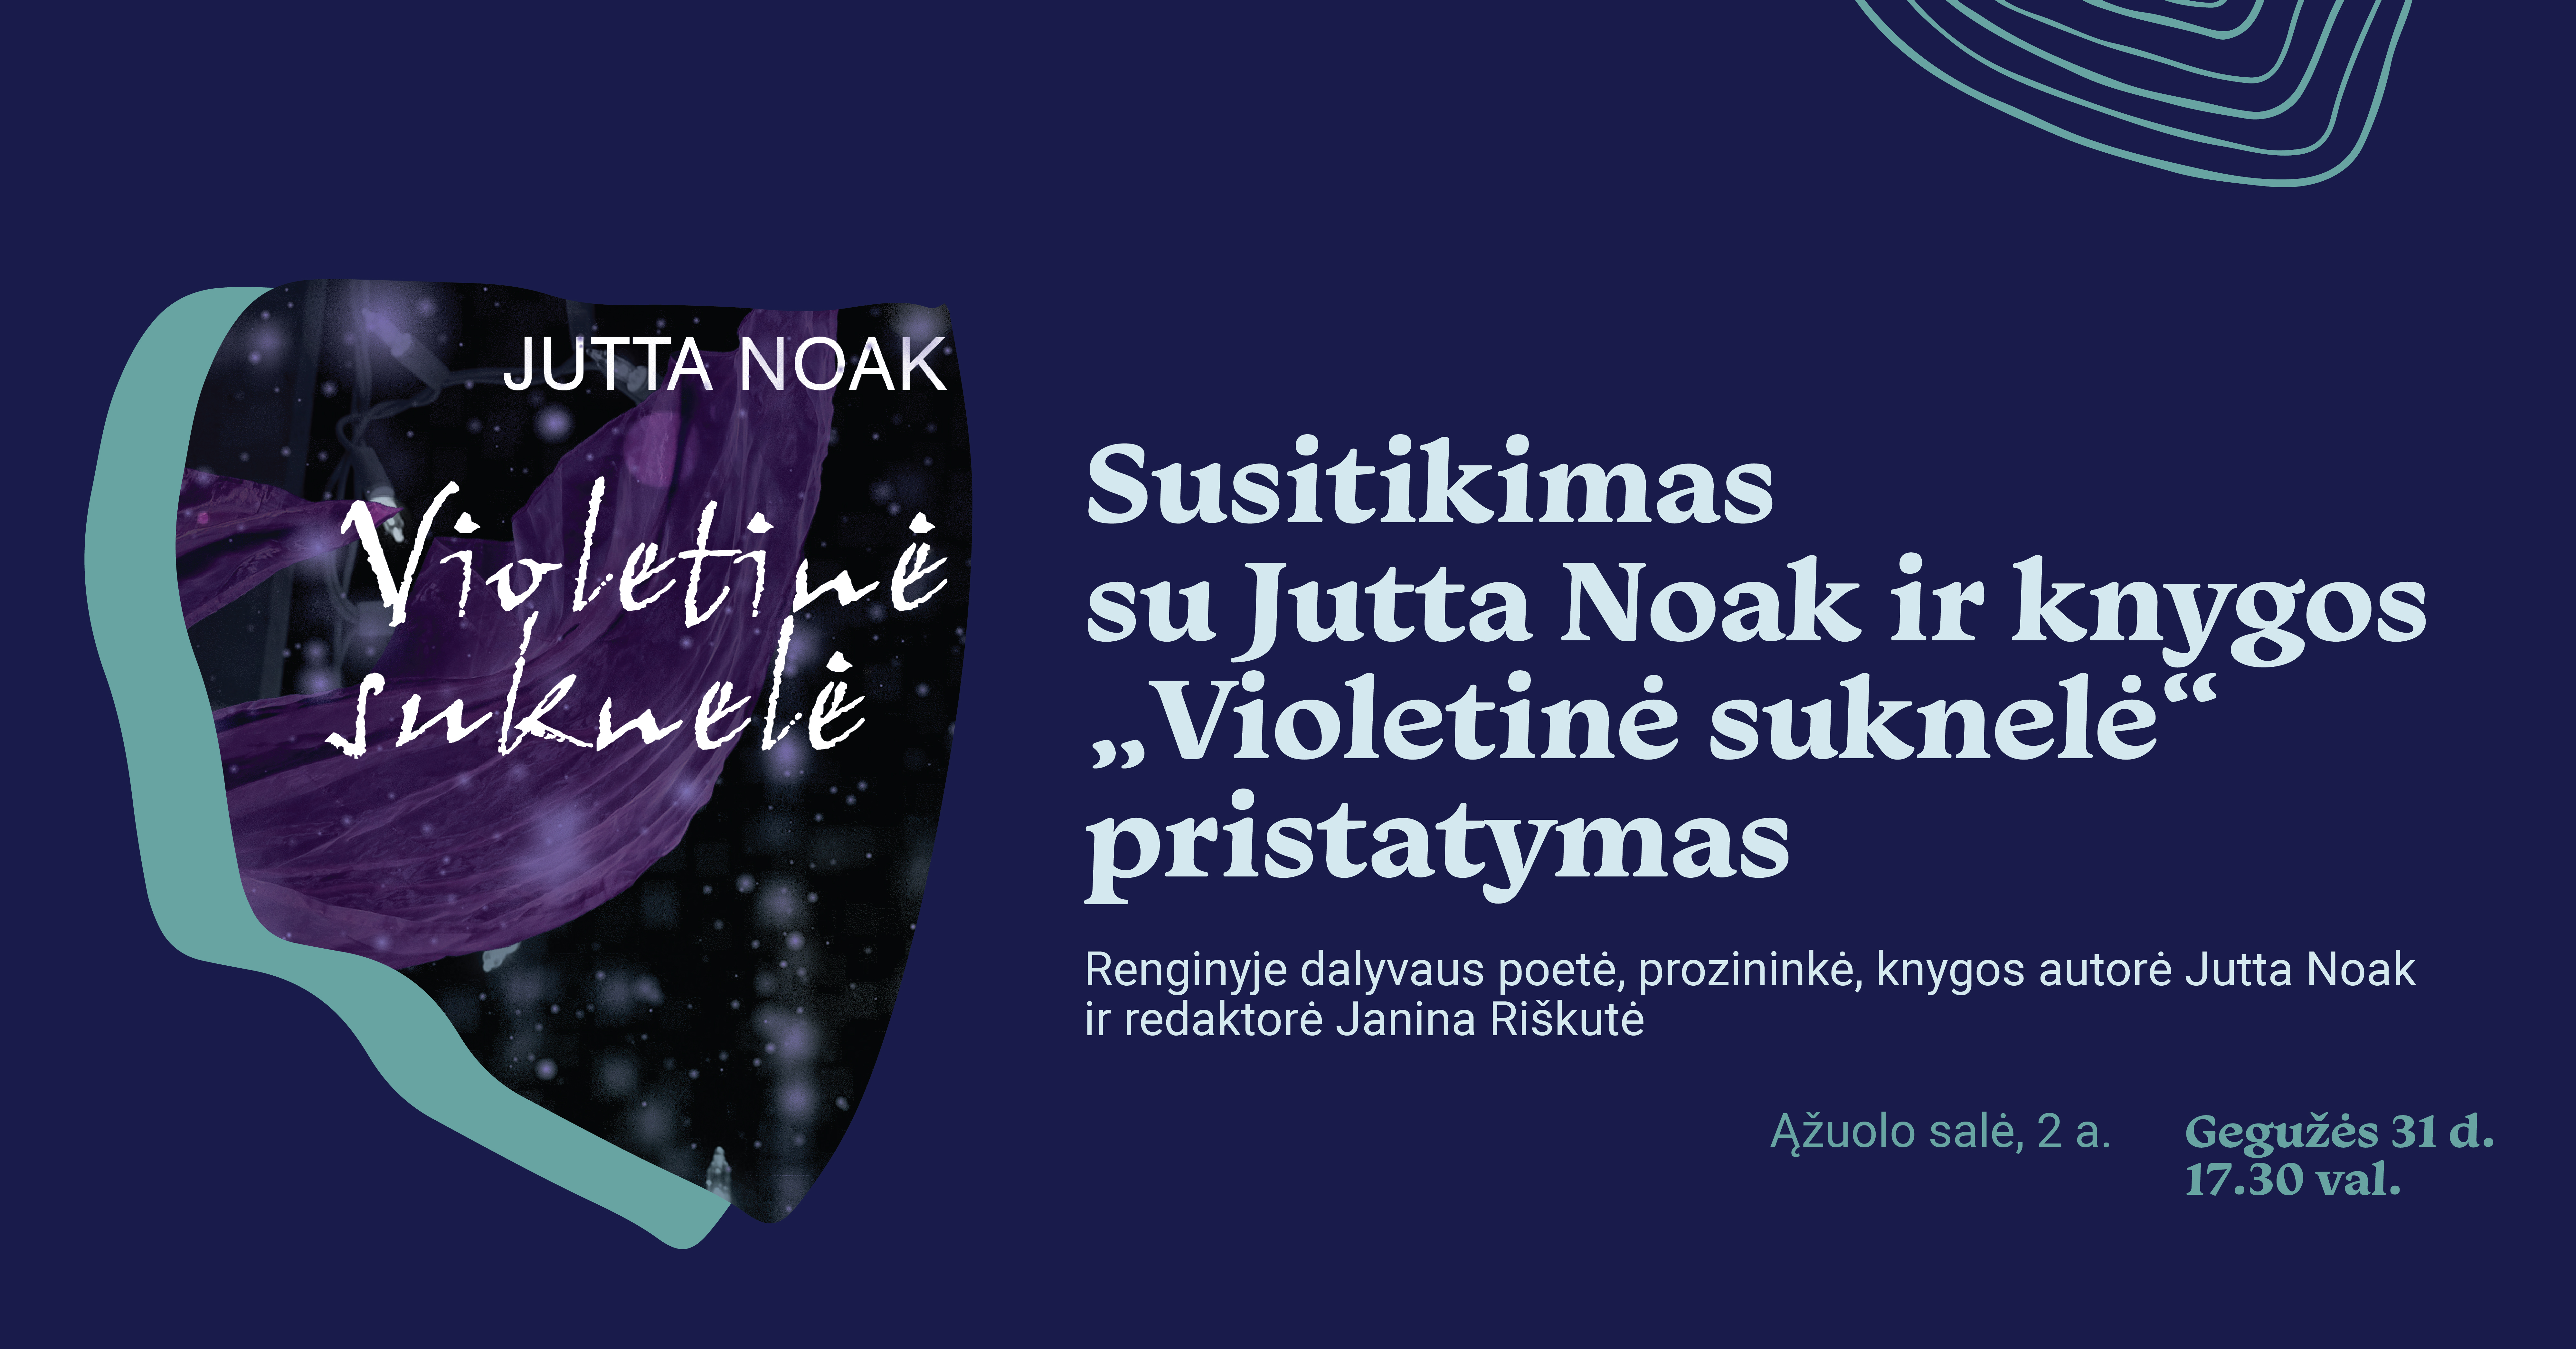 Susitikimas su poete, prozininke Jutta Noak ir jos novelių knygos „Violetinė suknelė“ pristatymas